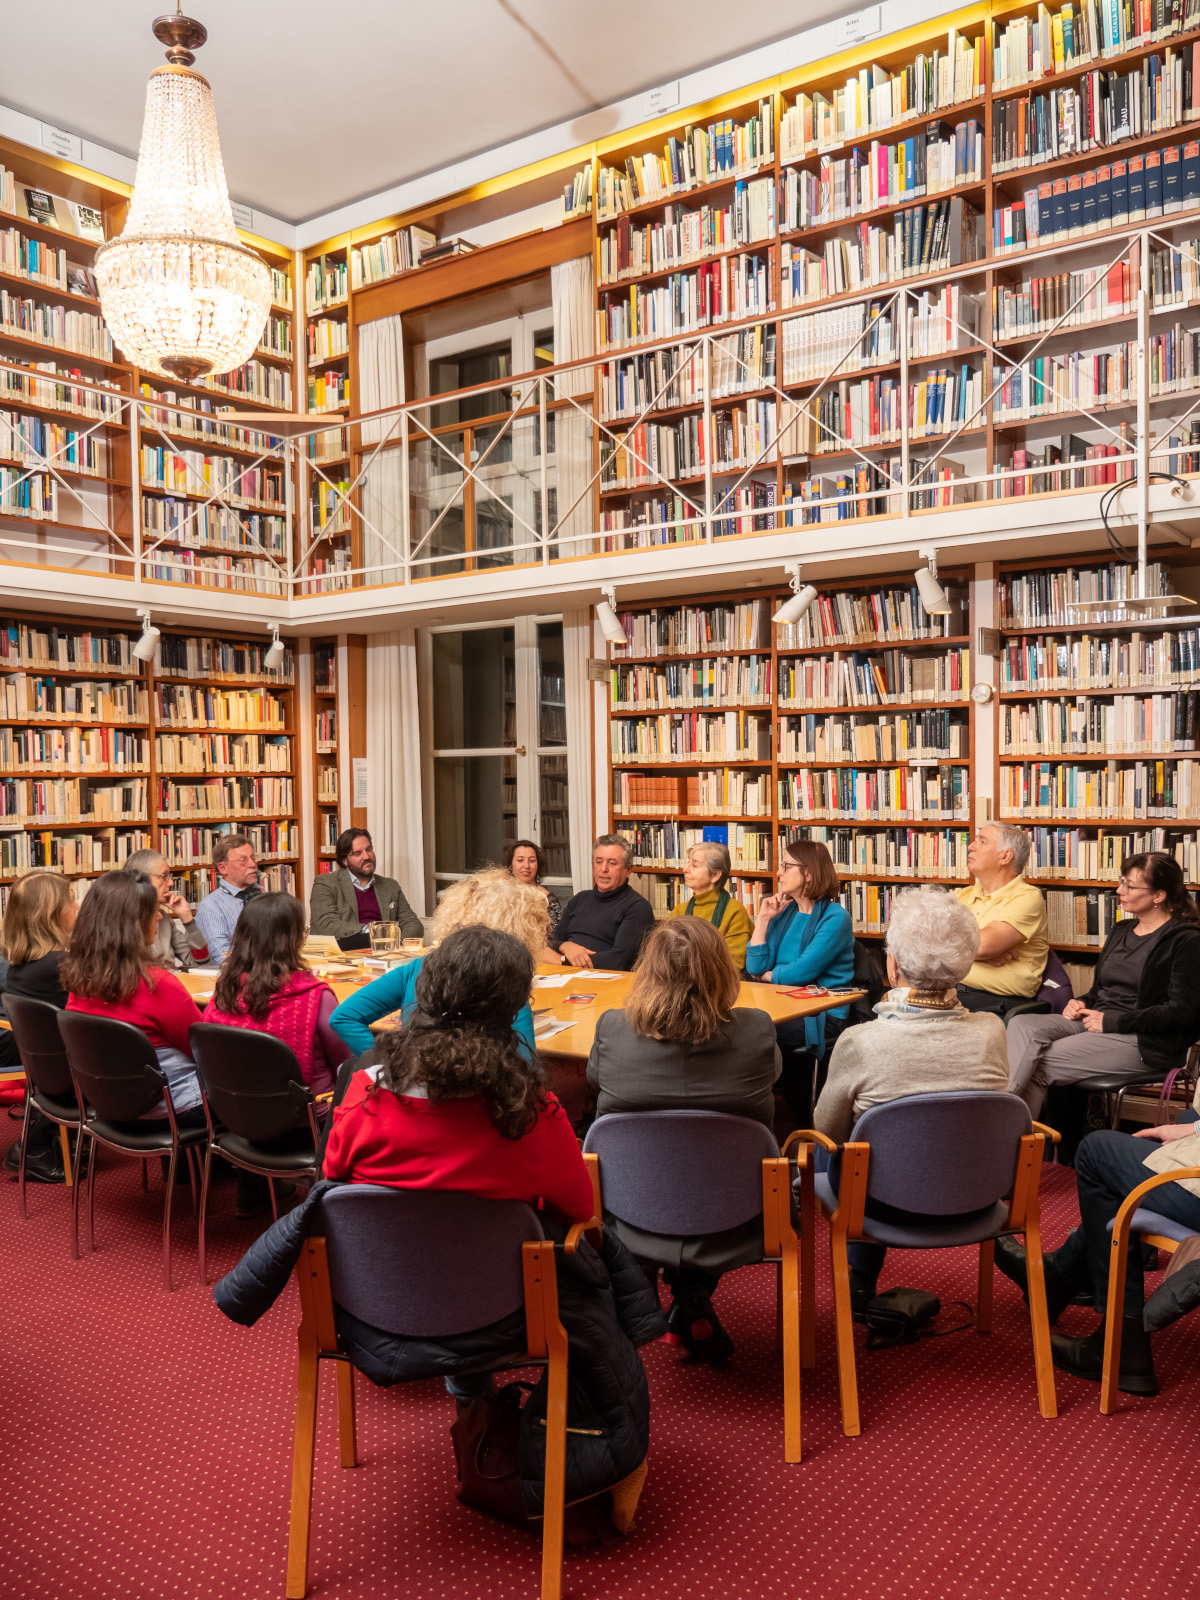 Leseclub im Instituto Cervantes in München: Mittlerweile bieten die Bibliotheken auch virtuelle Leseclubs an. Foto: Instituto Cervantes